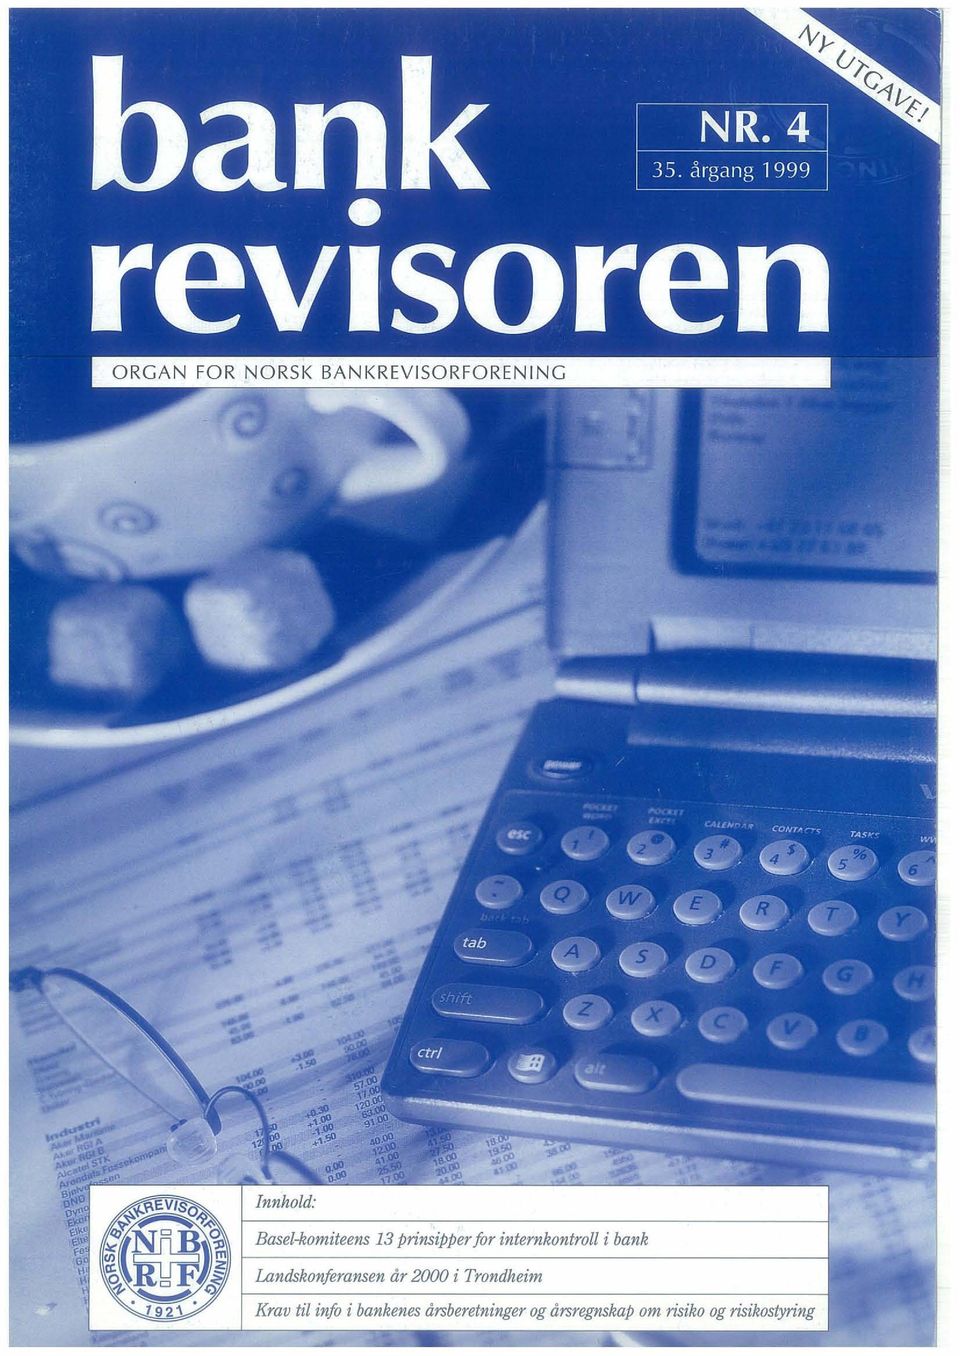 2000 i Trondheim Krav til info i bankenes